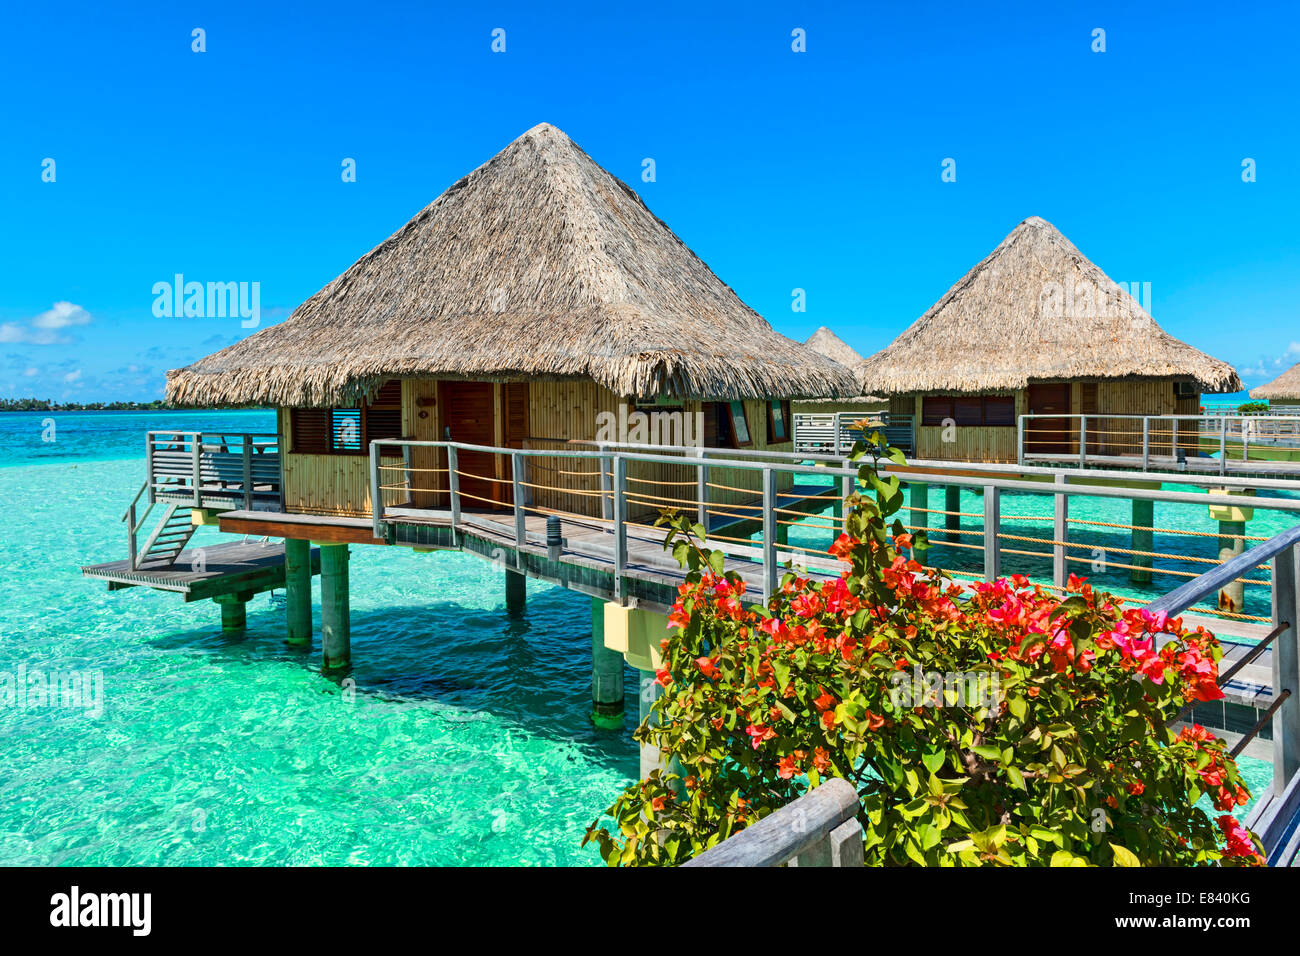 Overwater bungalows, Bora Bora, French Polynesia Stock Photo